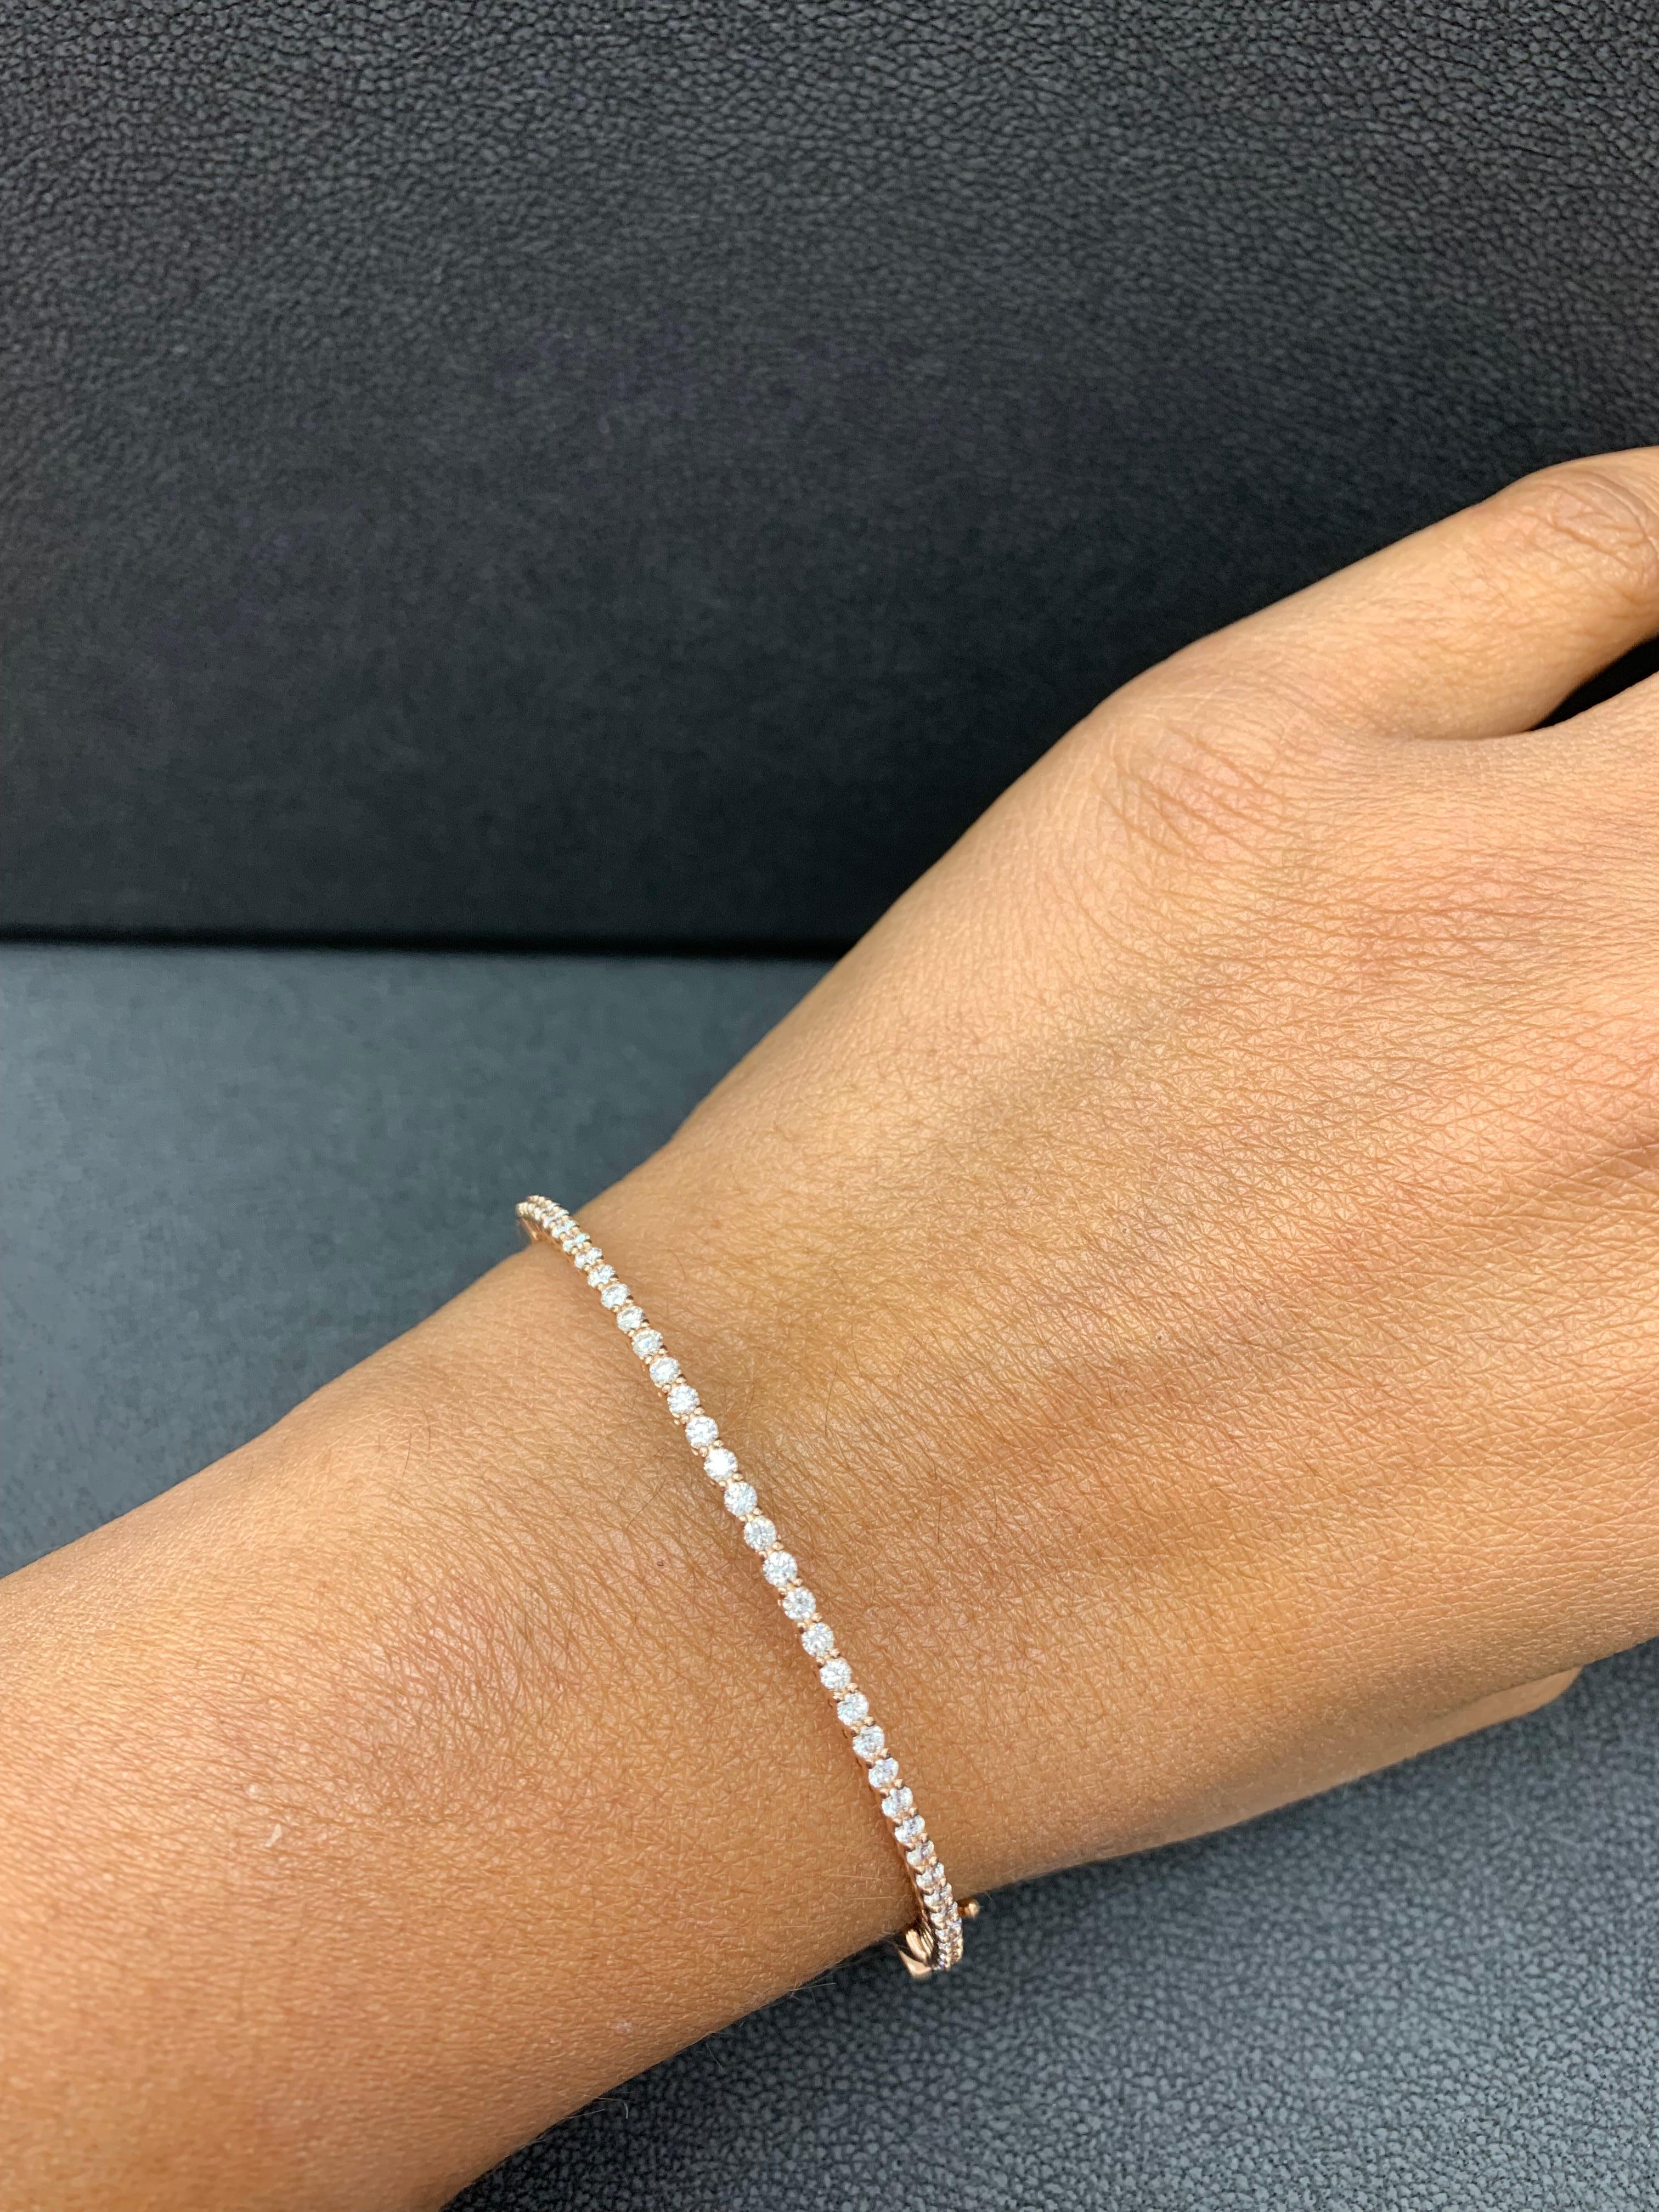 Un bracelet simple mais élégant serti de 39 diamants de taille ronde pesant au total 1,01 carat. Un fermoir permet d'enfiler et de porter le bracelet en toute sécurité. Fabriqué en or rose 14k.

Style disponible dans différentes gammes de prix. Les